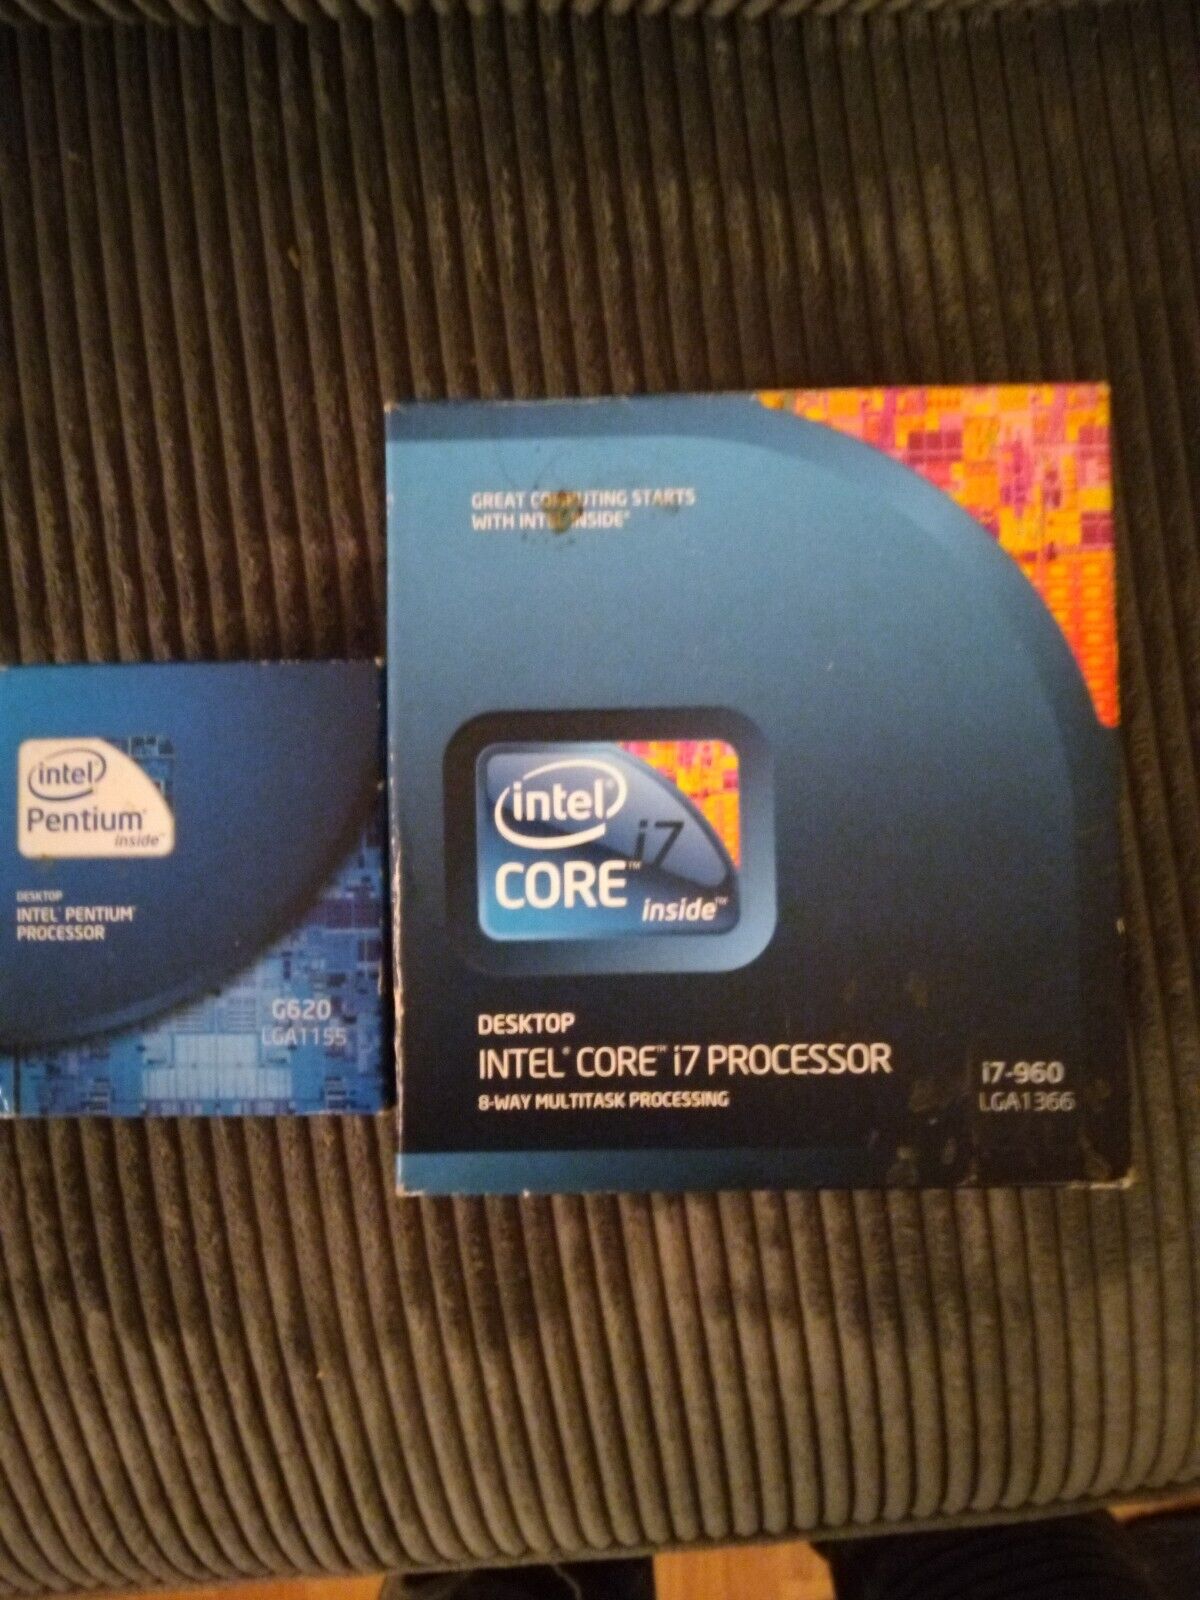 Intel Pentium i7 Processor